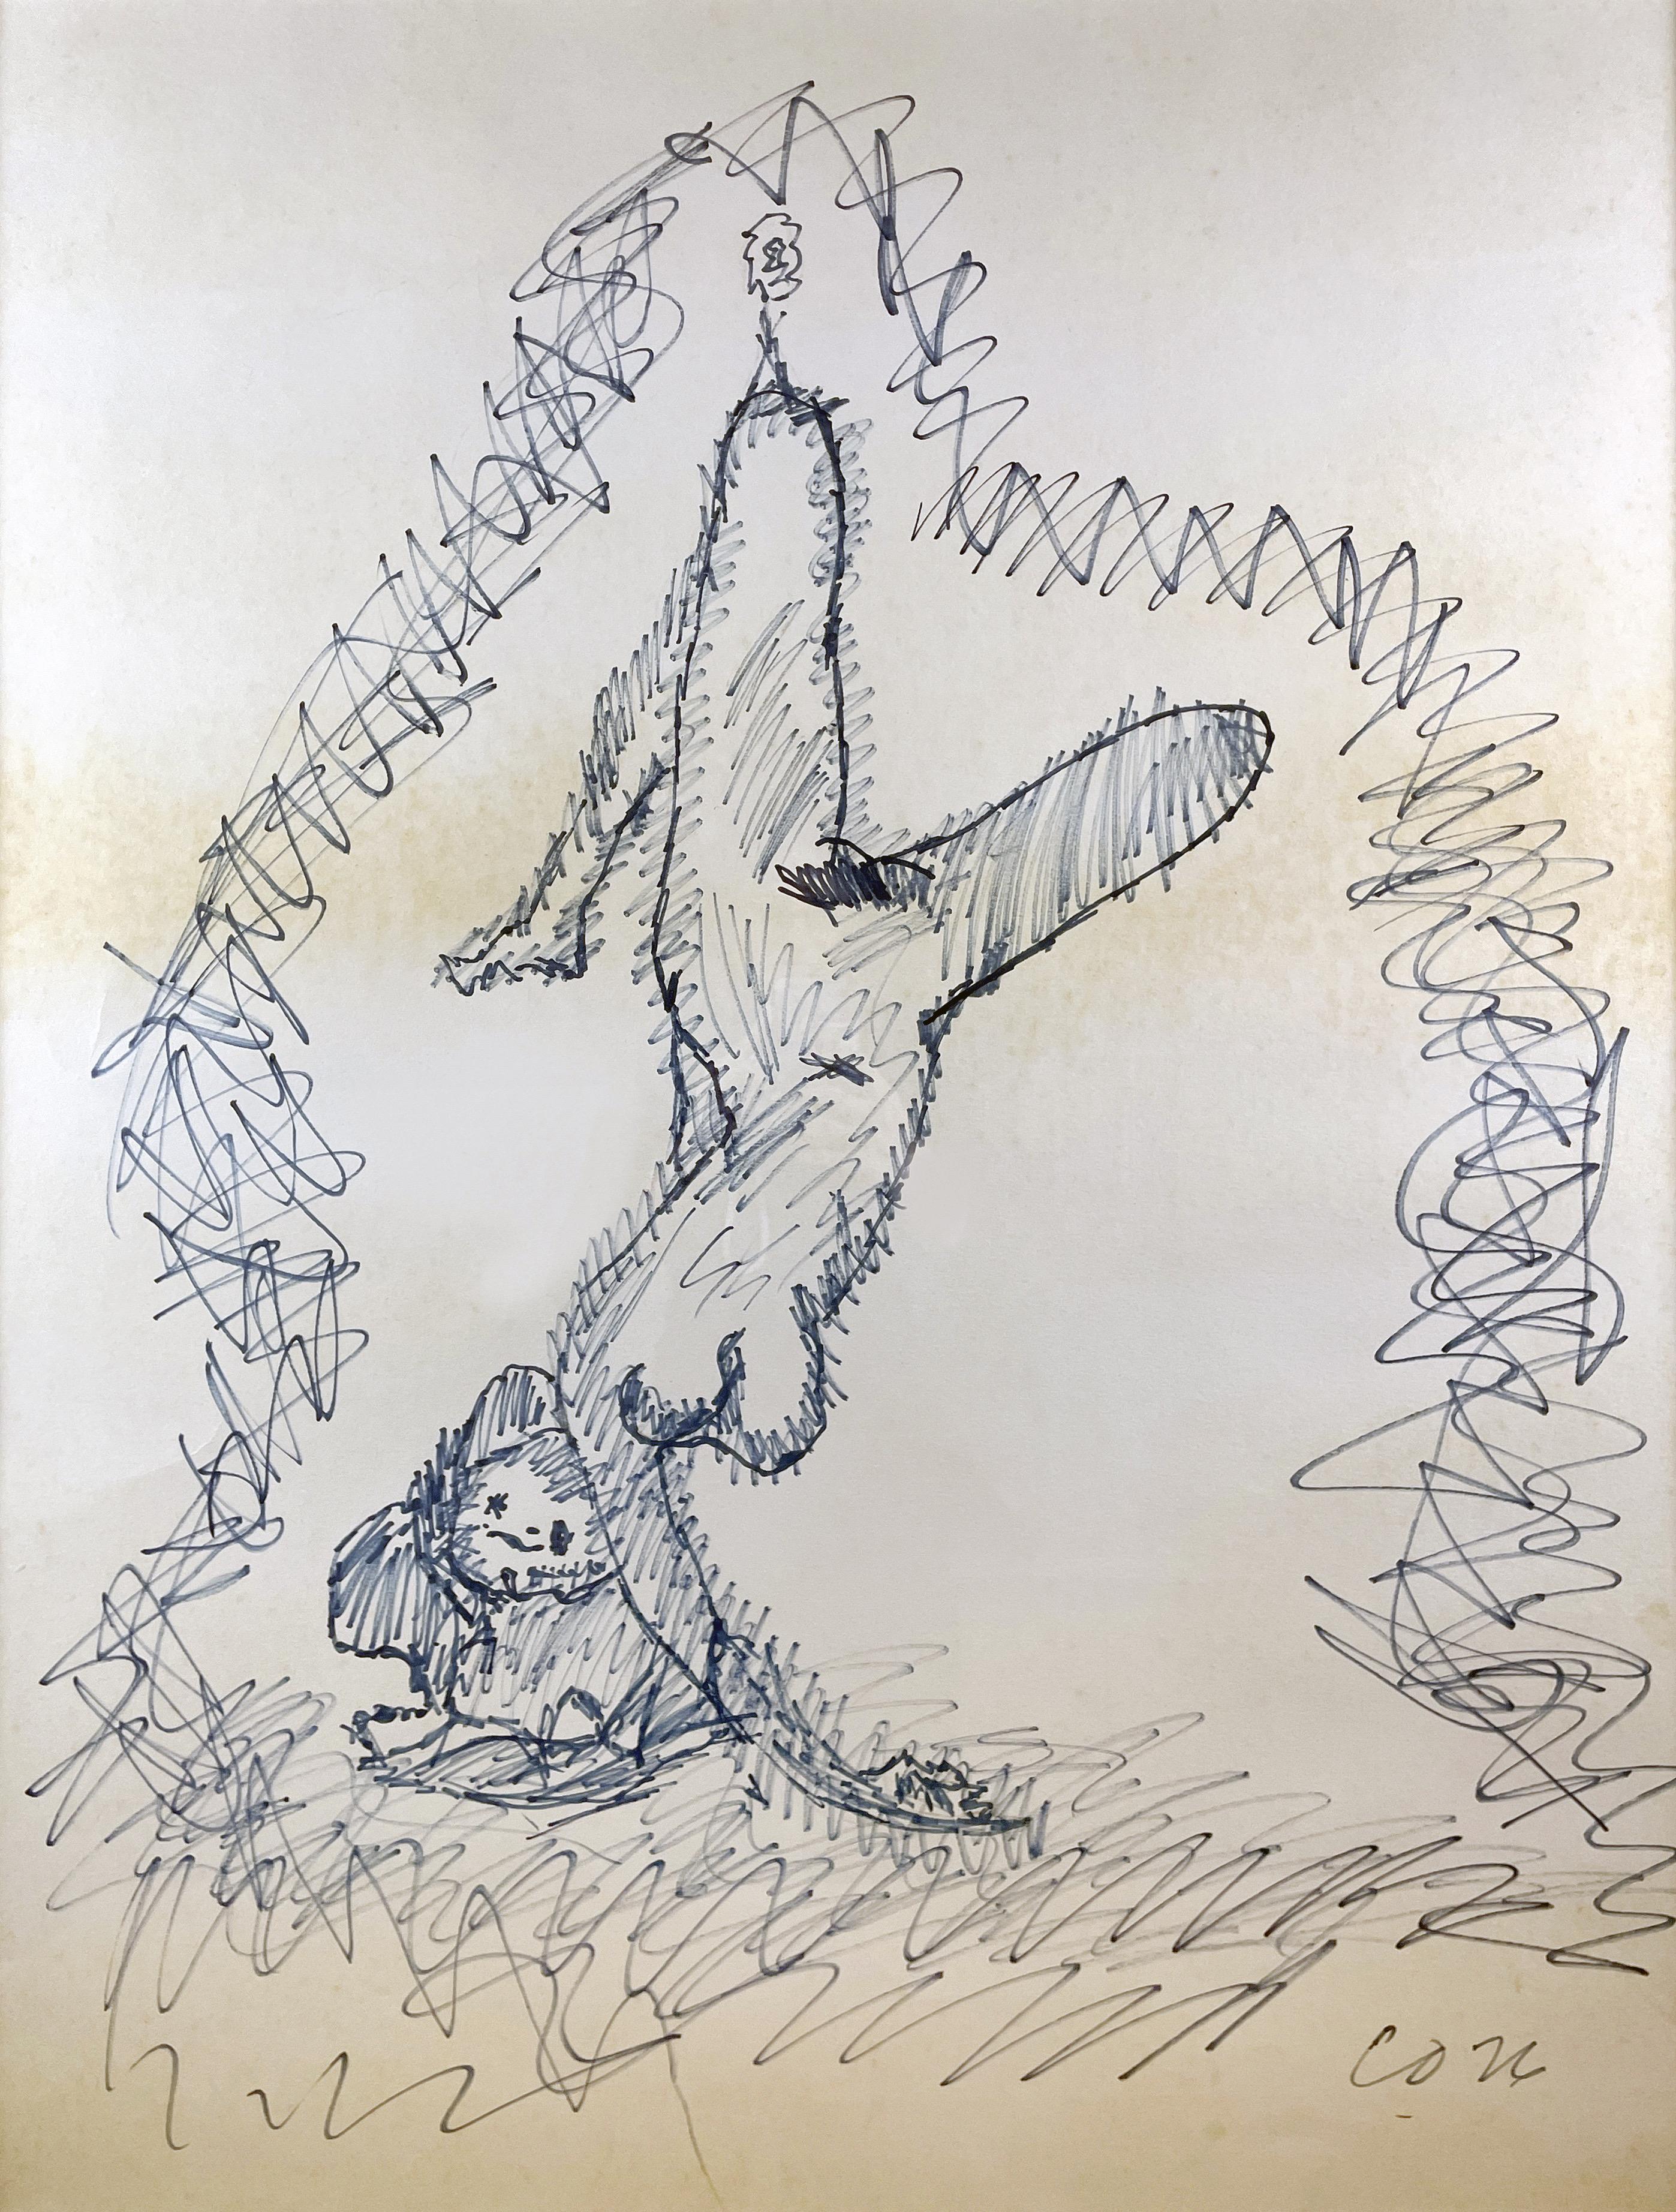 Gerahmte Zeichnung von Claes Oldenburg auf Passepartout, die eine Frau zeigt, die an einer Art Draht oder Seil hängt und von einem Flaschenzug hochgehalten wird. Die hängende Frau ist ein wiederkehrendes Motiv in Oldenburgs Werk, sowohl in